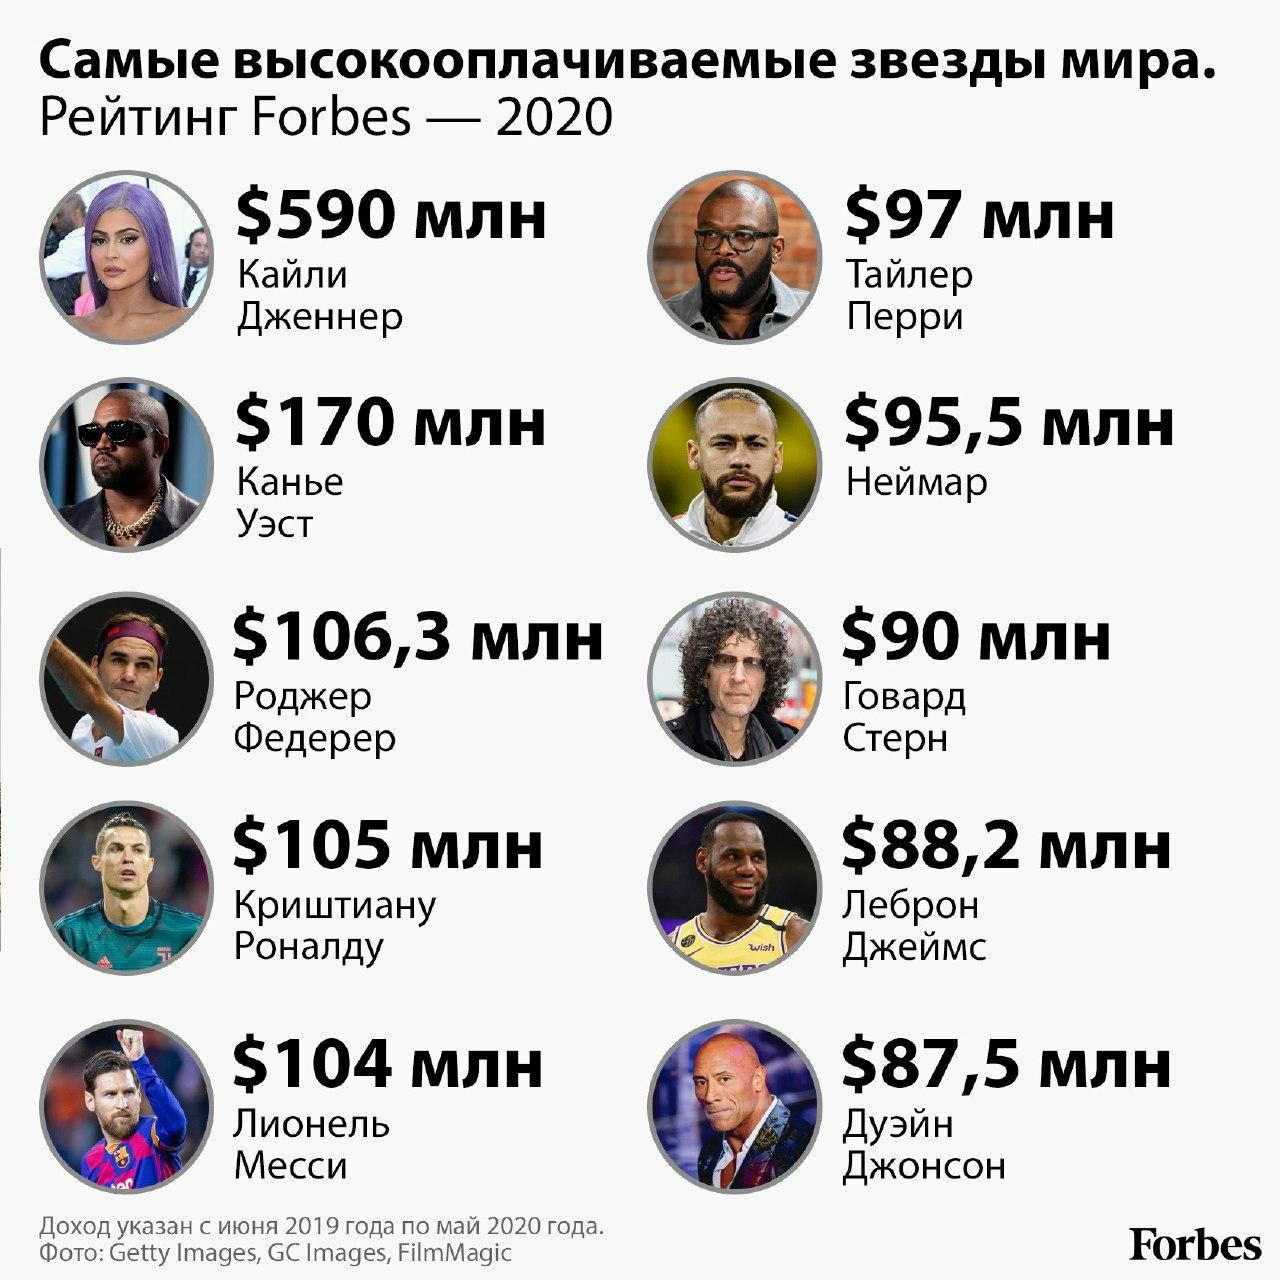 Что помогает людям богатеть? как известные предприниматели россии и мира зарабатывали состояние с нуля